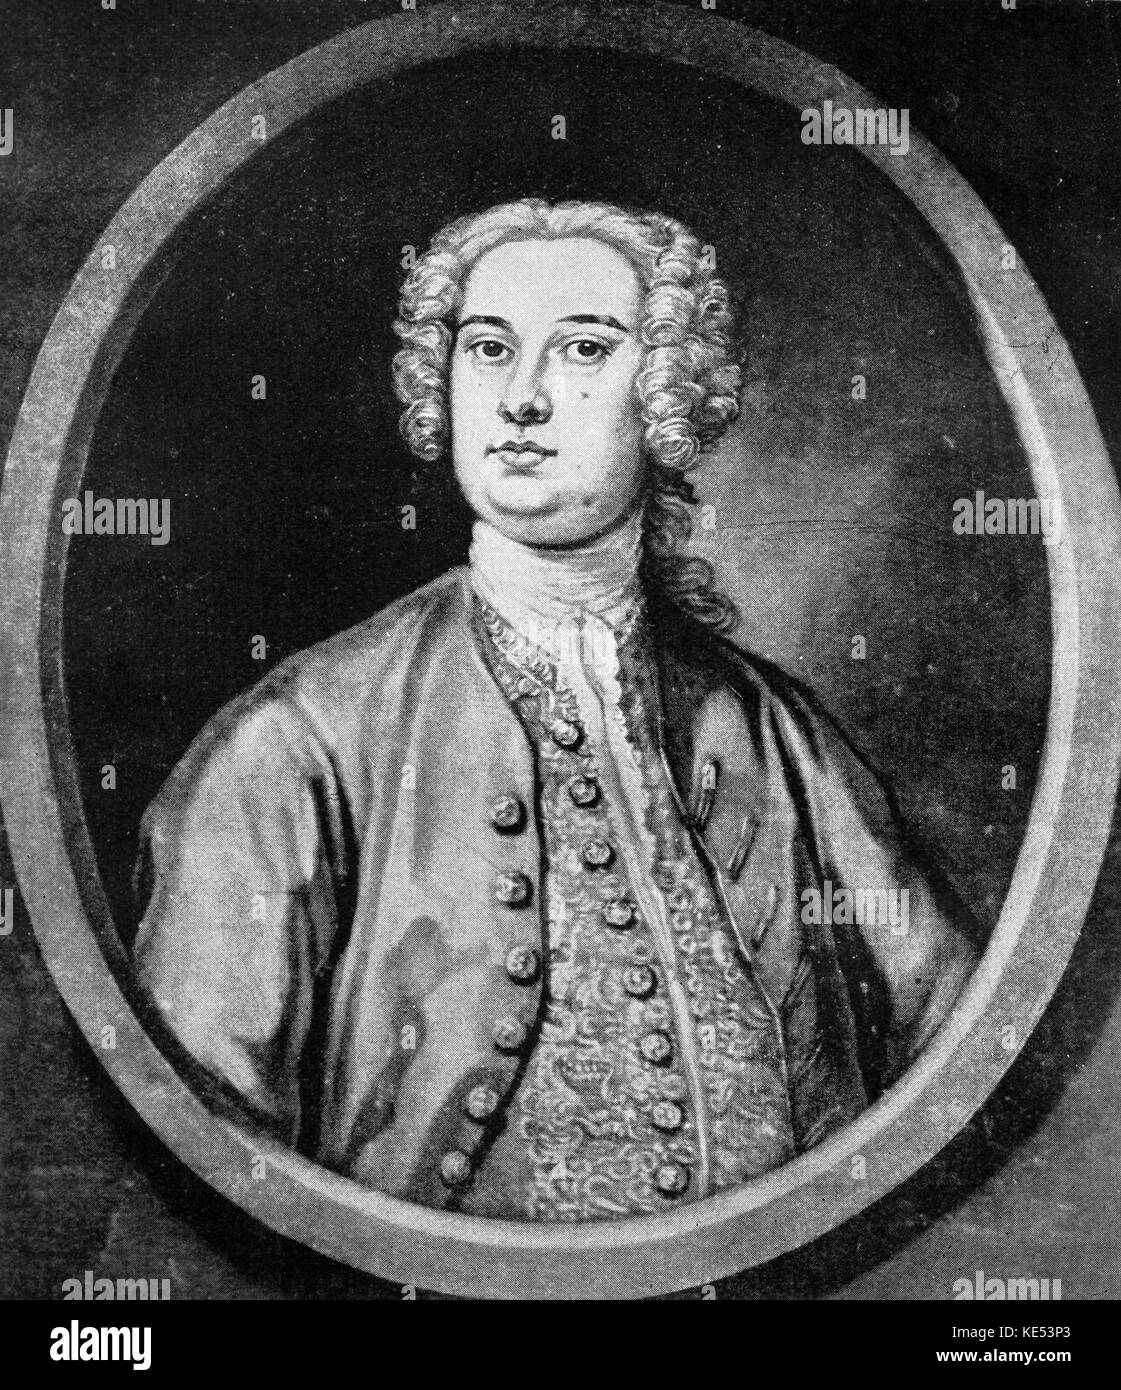 Giovanni Carestini. Italienischer Kastrat, C. 1704 - C. 1760. Sang in Händels Opern. Georg Friedrich Händel, deutsch-englischer Komponist, 23. Februar 1685 - 14. April 1759 Stockfoto